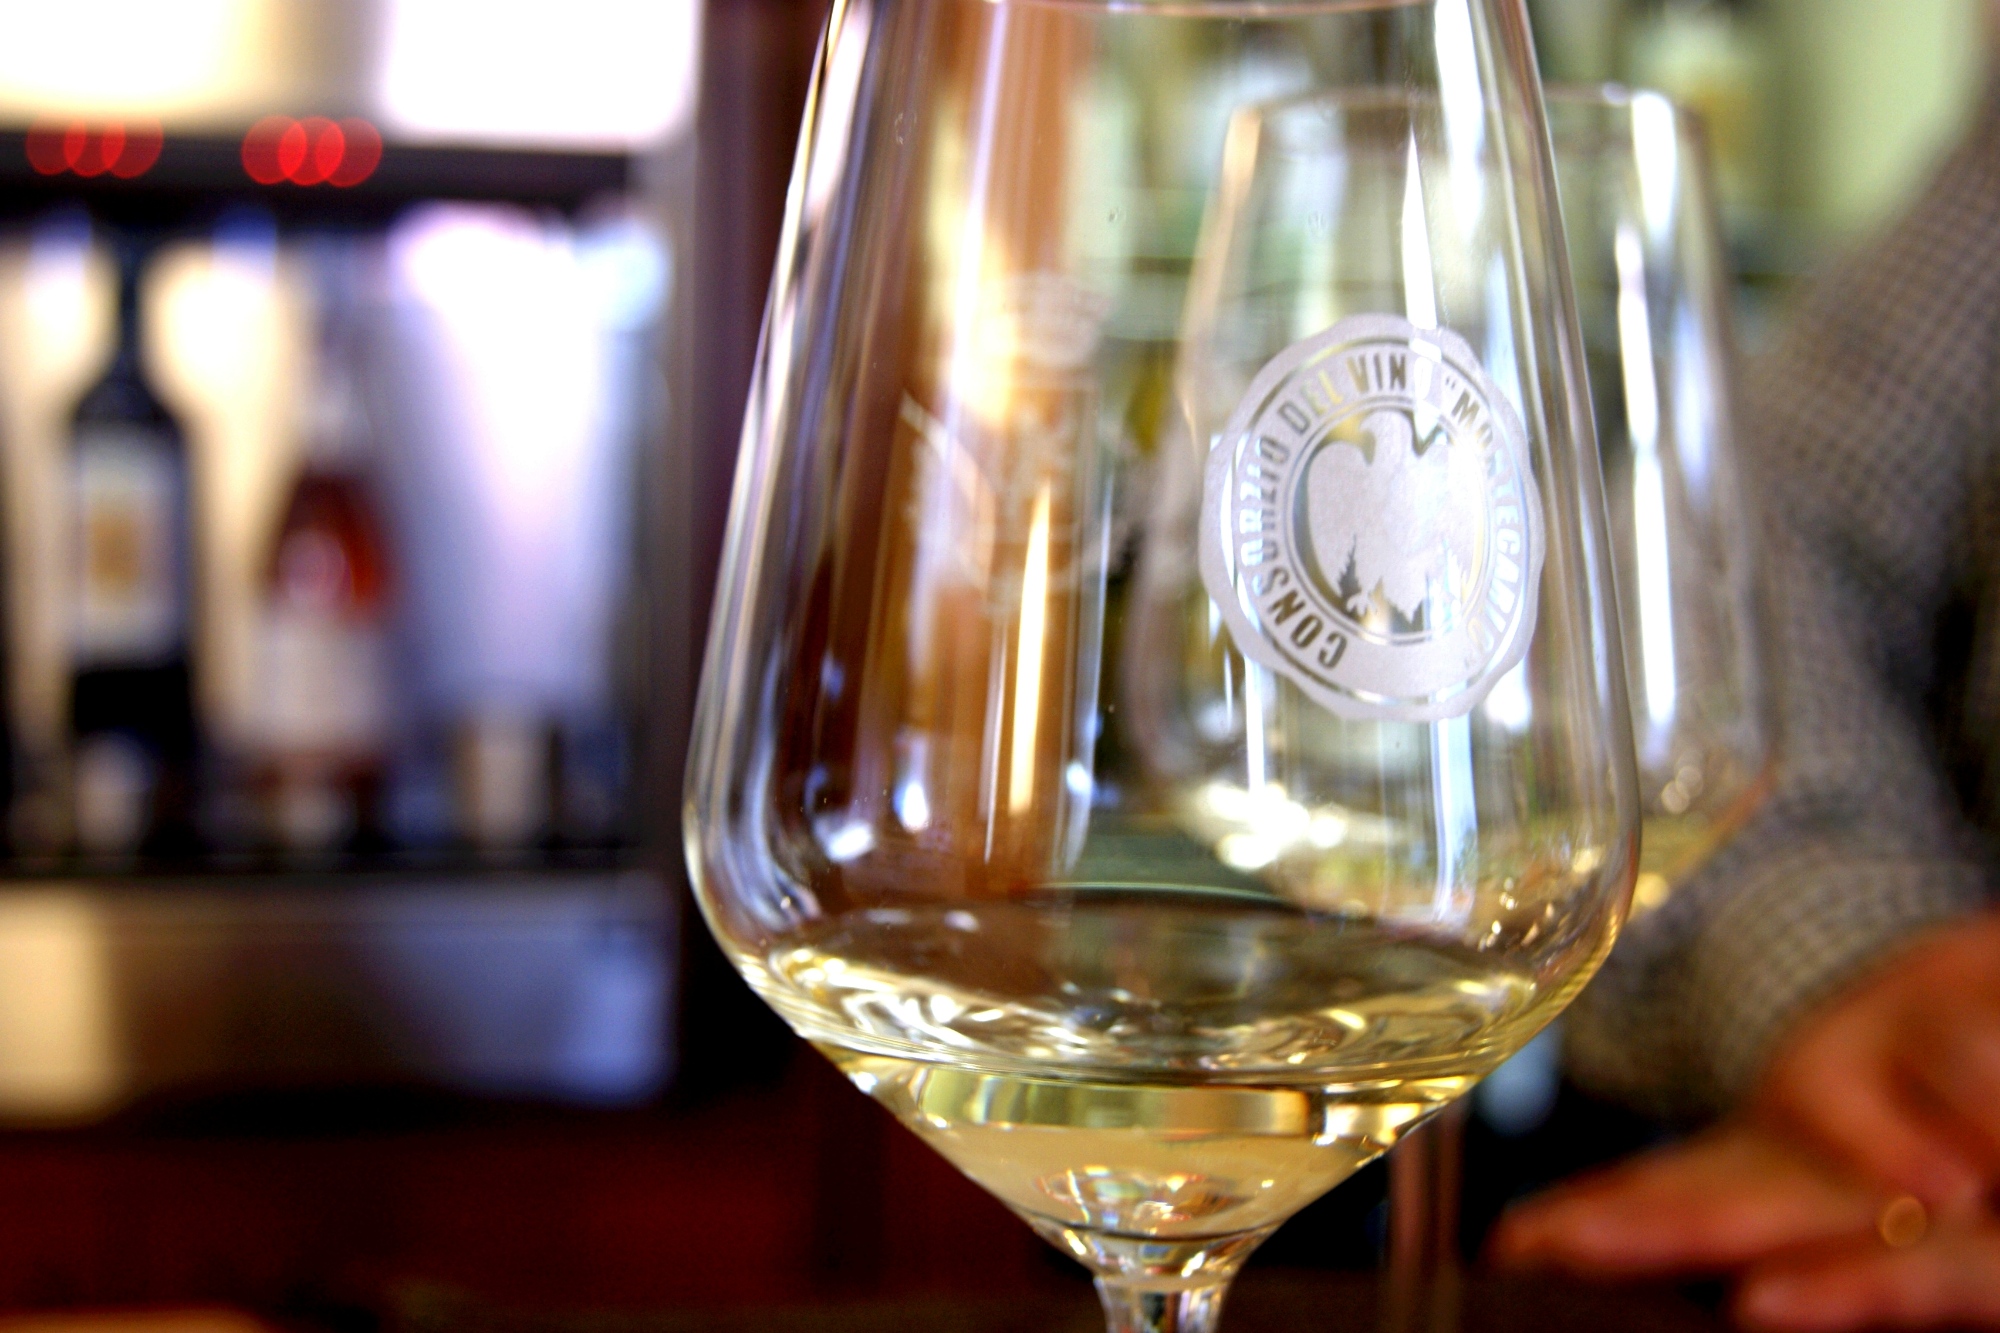 A glass of Montecarlo white wine